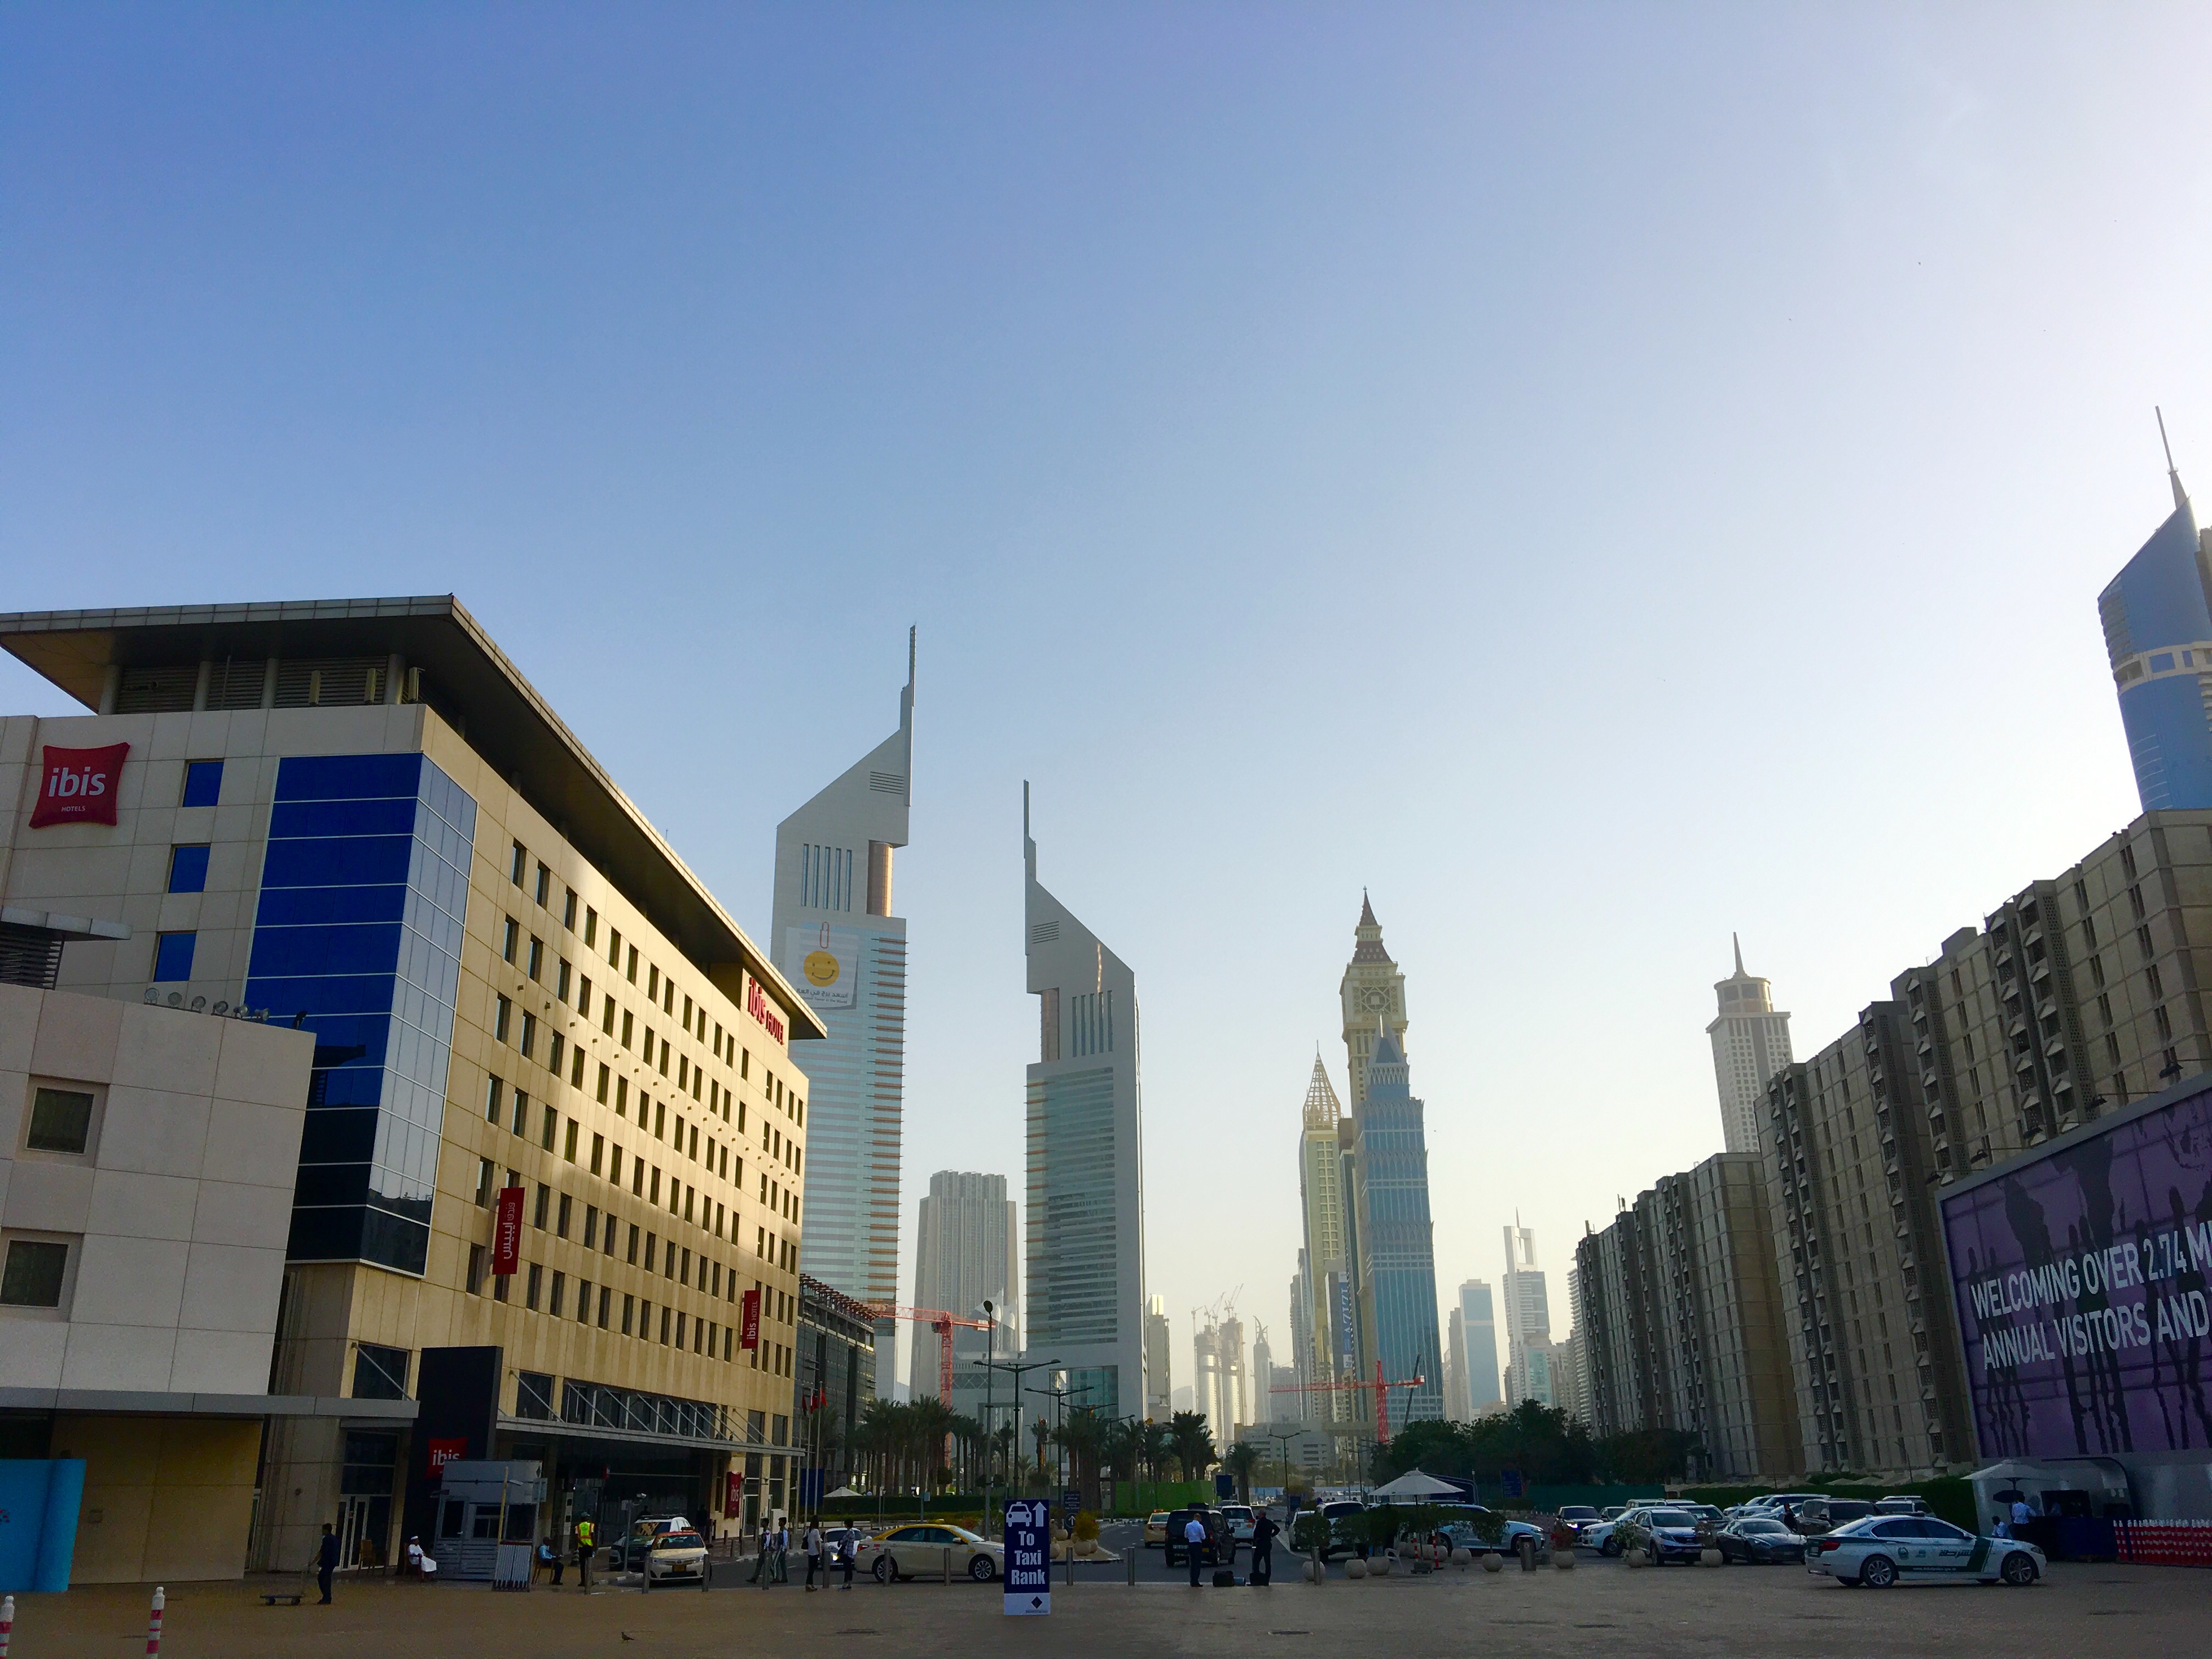 Ibis World Trade Center in Dubai